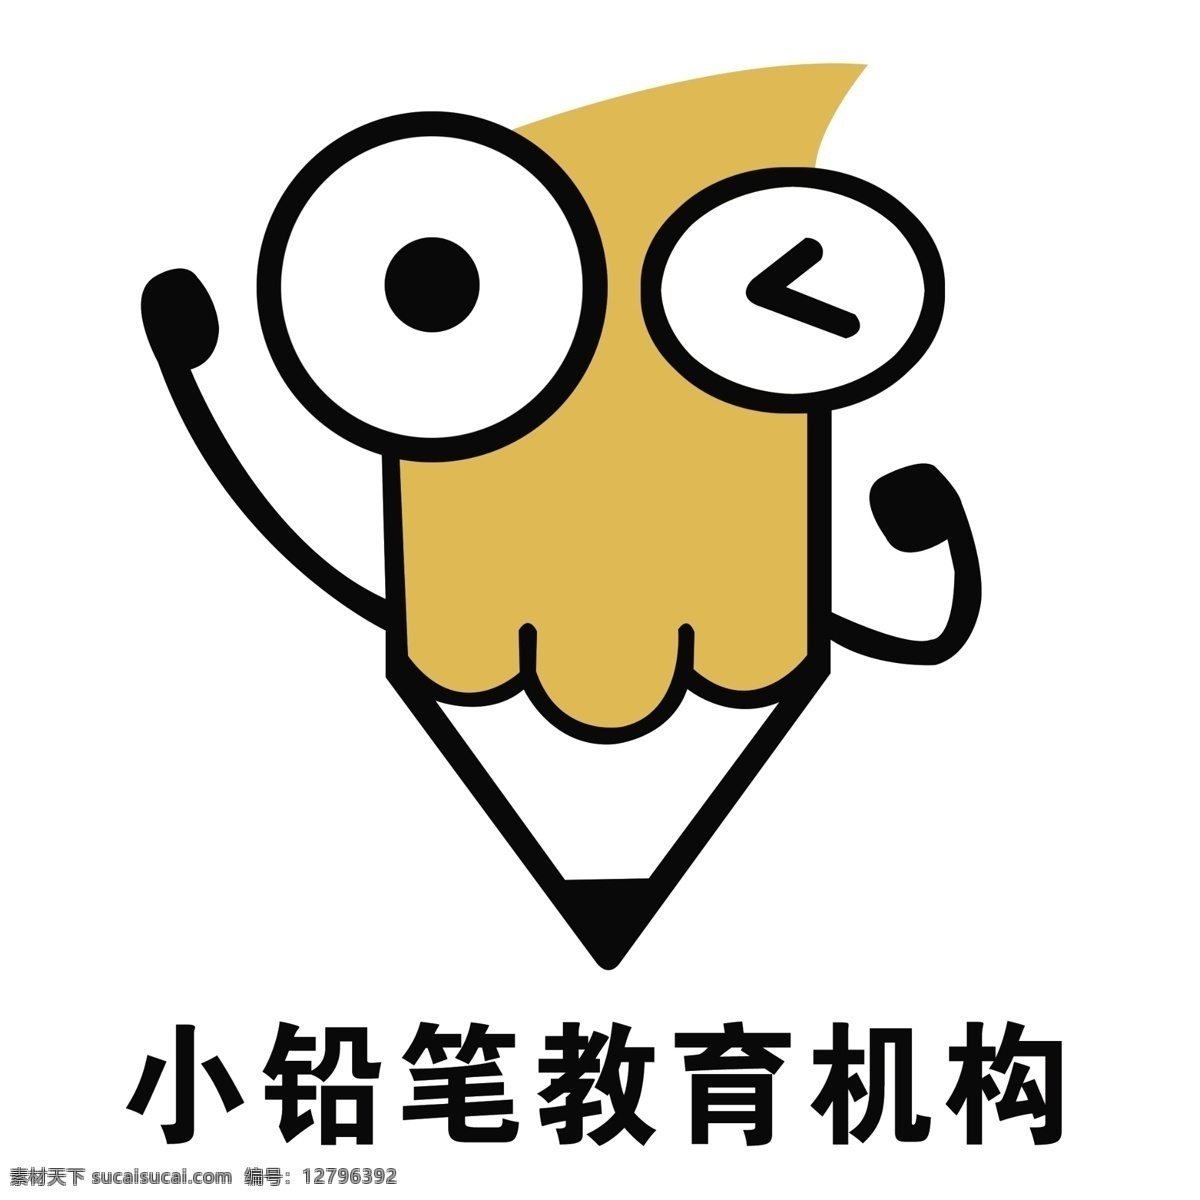 前部 logo 铅笔logo 铅笔标志 铅笔头 教育logo 教育机构 培训班 标志 补习班 文具logo